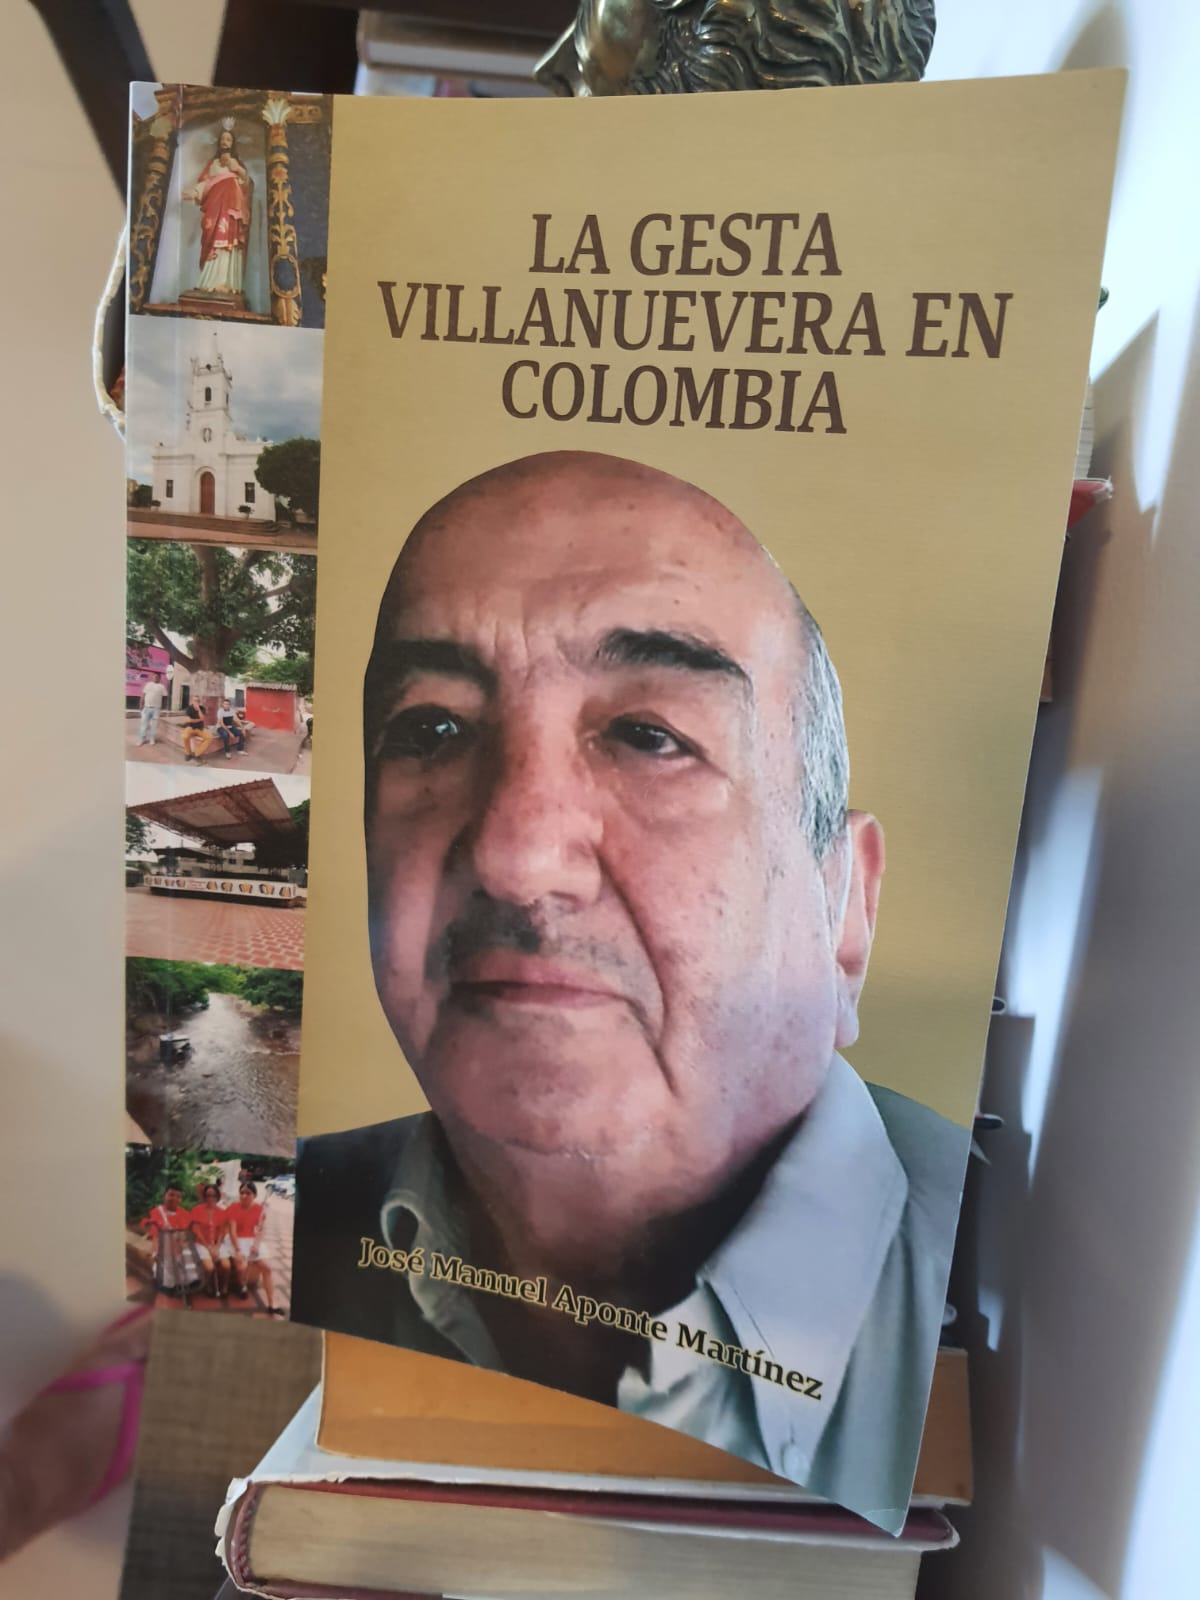 Carátula del libro ‘La Gesta Villanuevera en Colombia’.